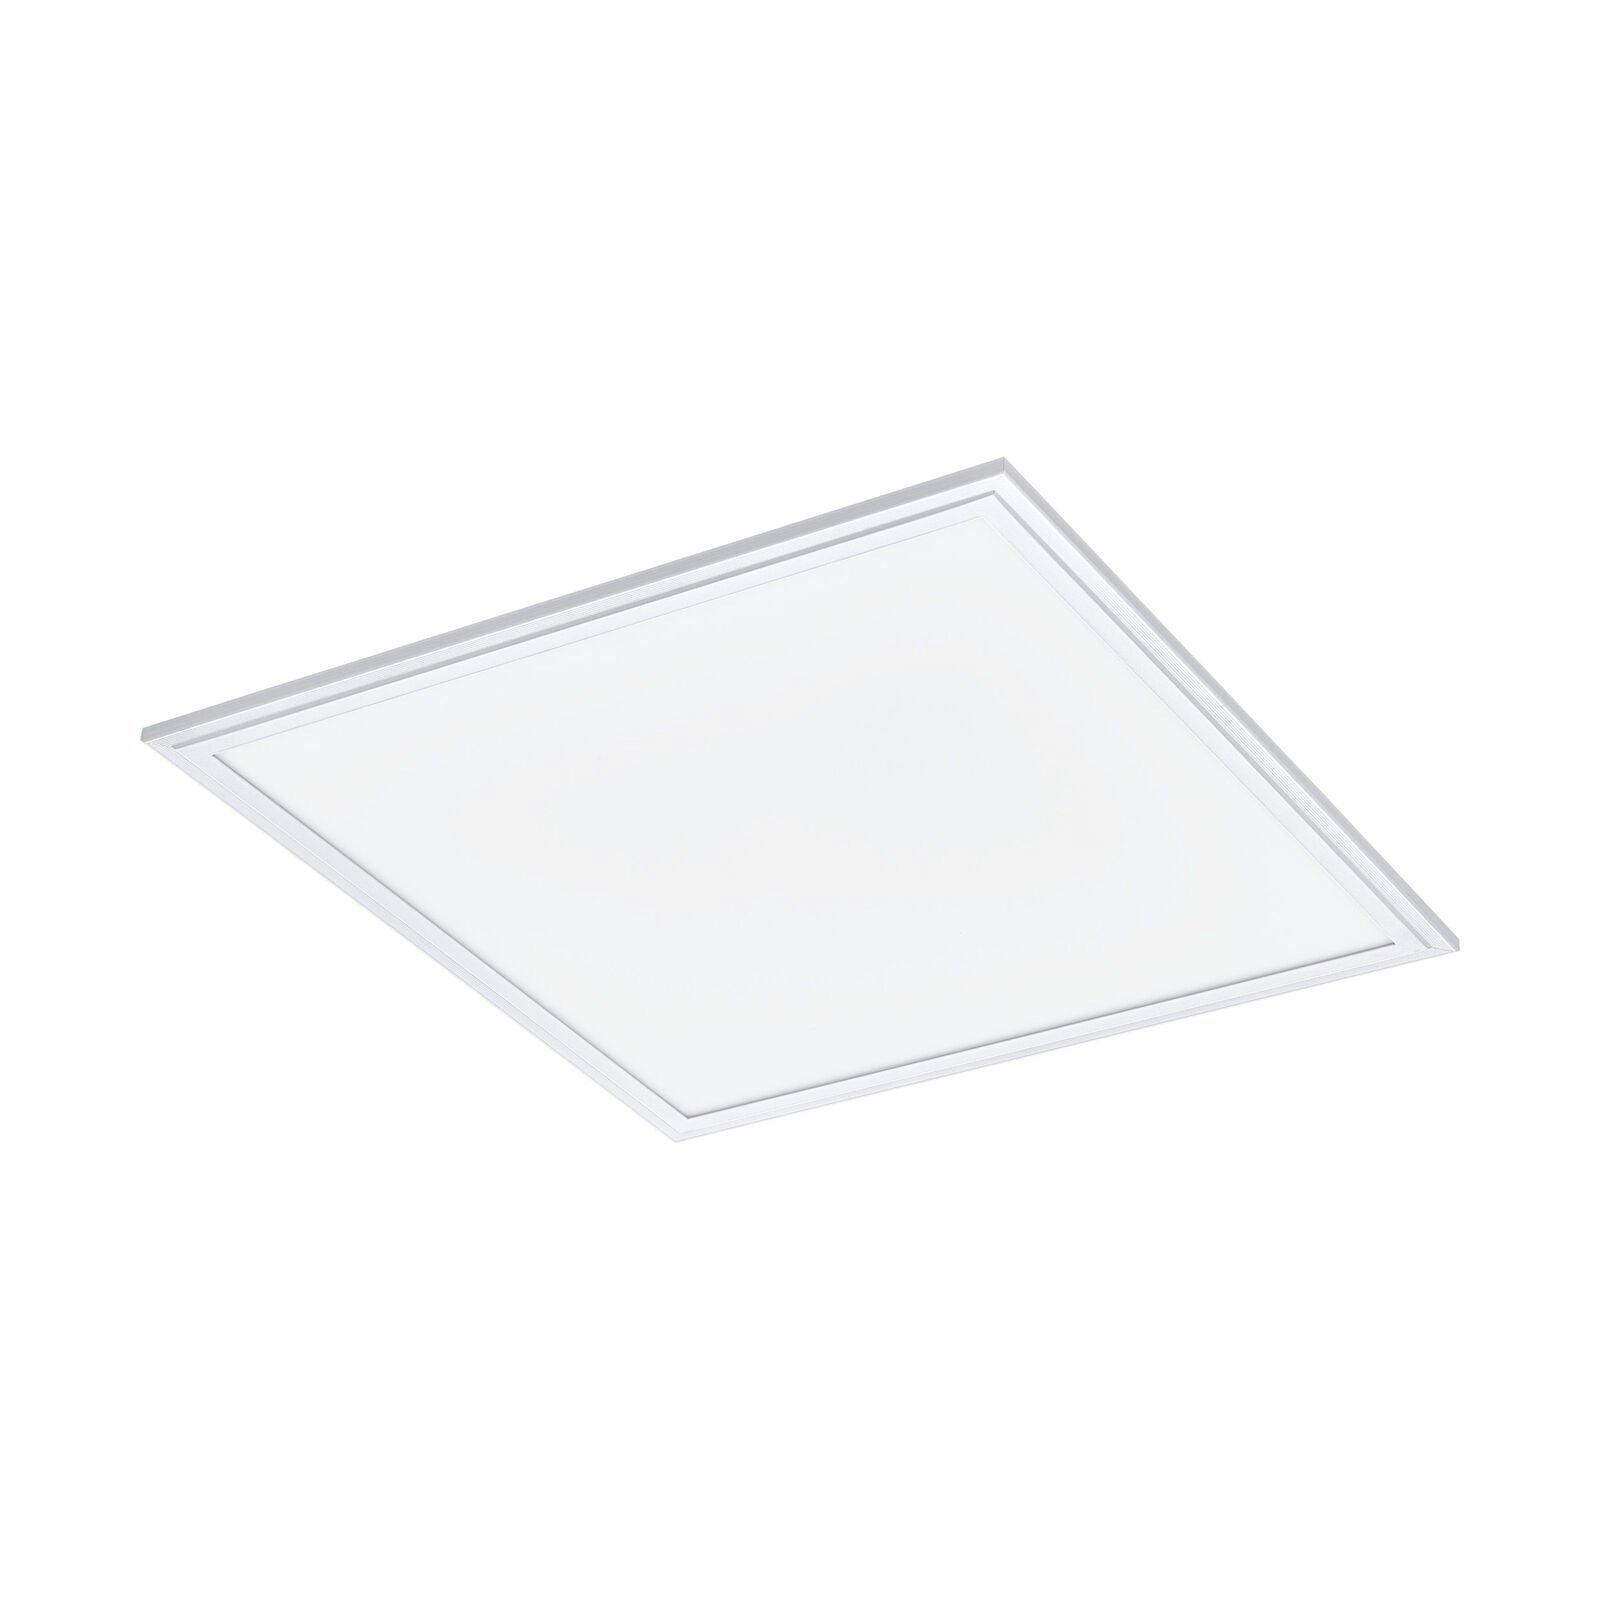 Wall / Ceiling Light White 450mm Slim Square Panel 21W Built in LED 4000K